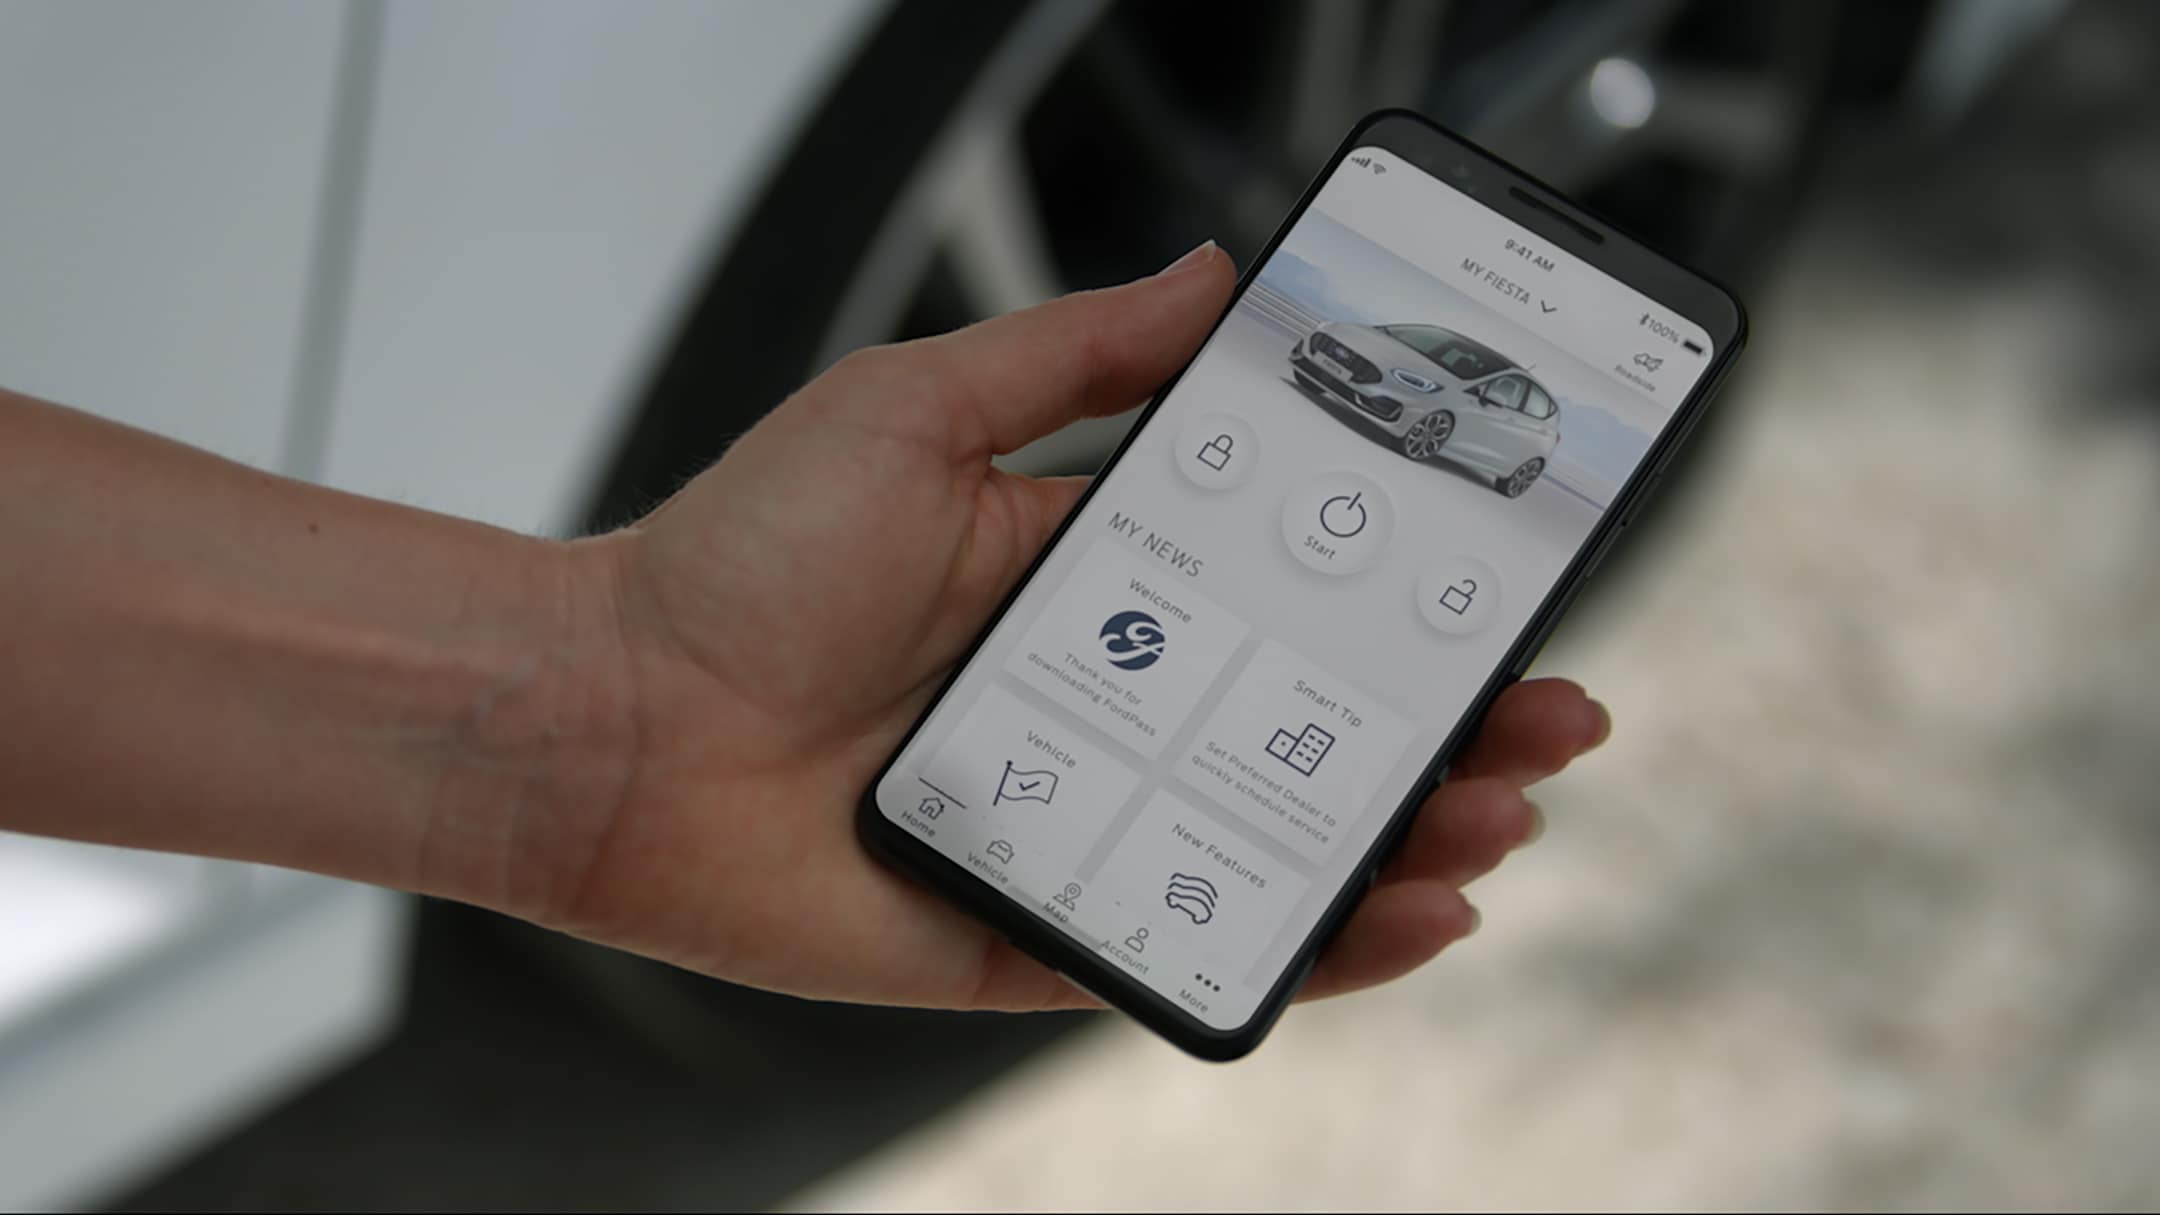 Ford Fiesta in Weiß. Detailansicht eines Smartphones mit Ford Pass App.